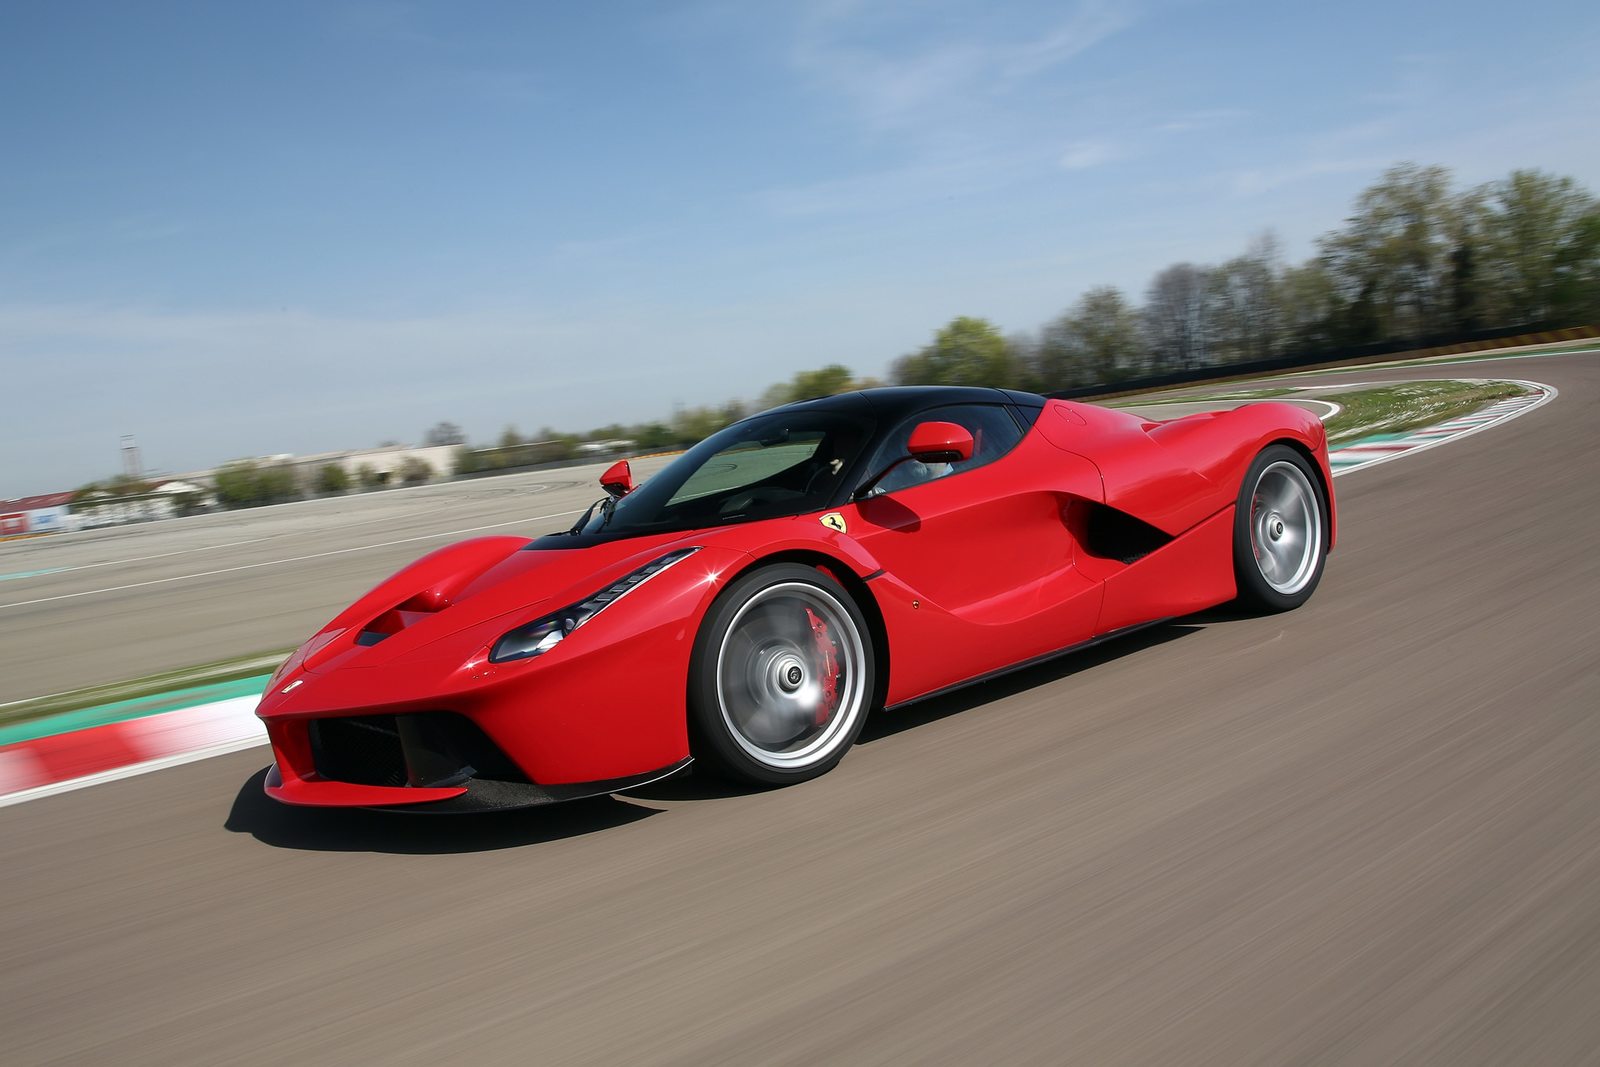 2014-Ferrari-LaFerrari-side-in-motion1.jpg